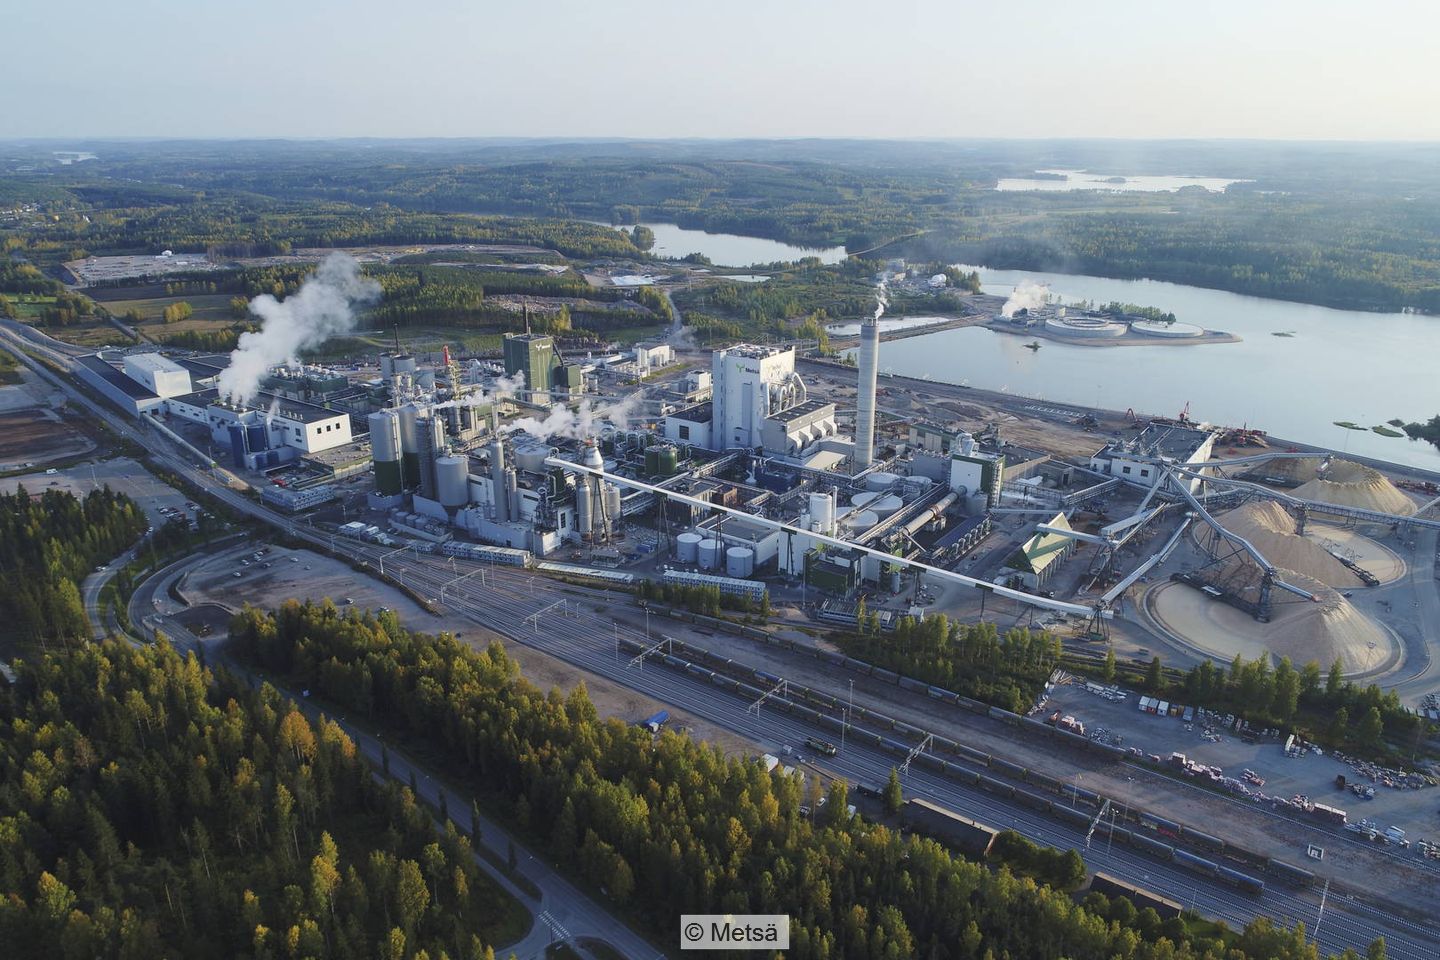 Aerial photo of Metsä Fibre's site in Äänekoski, Finland